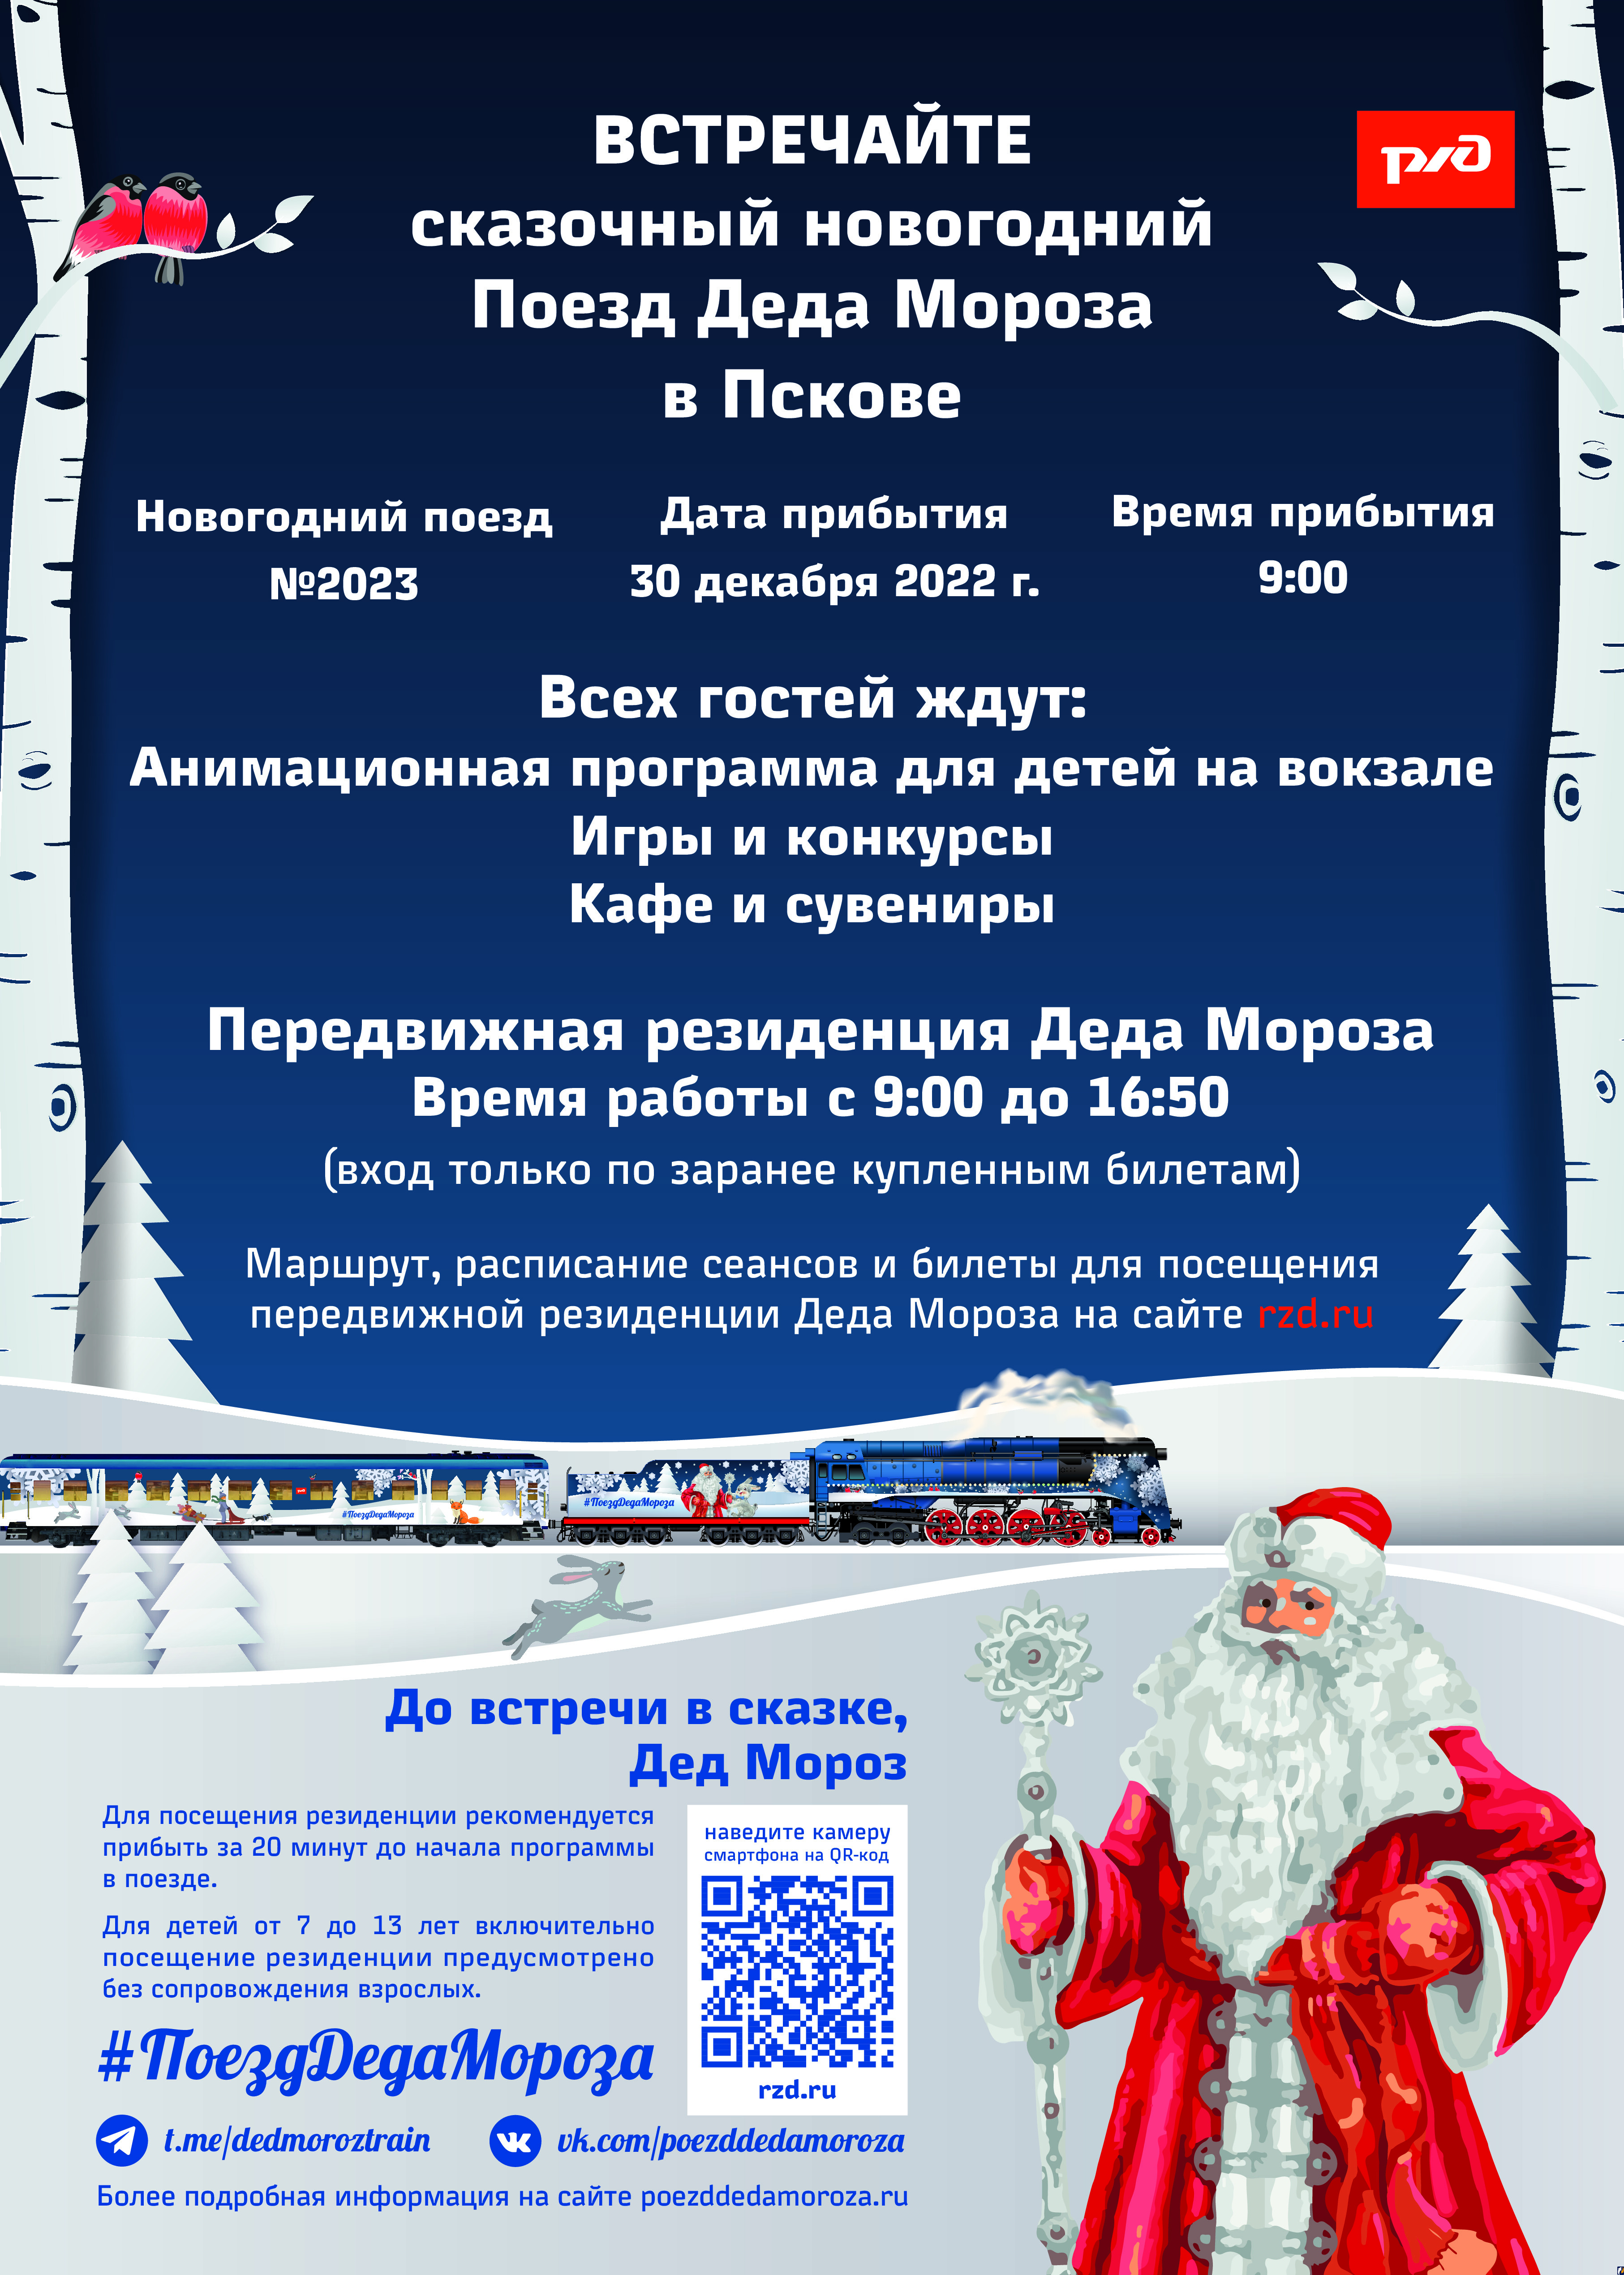 Поезд Деда Мороза приедет в Псков 30 декабря